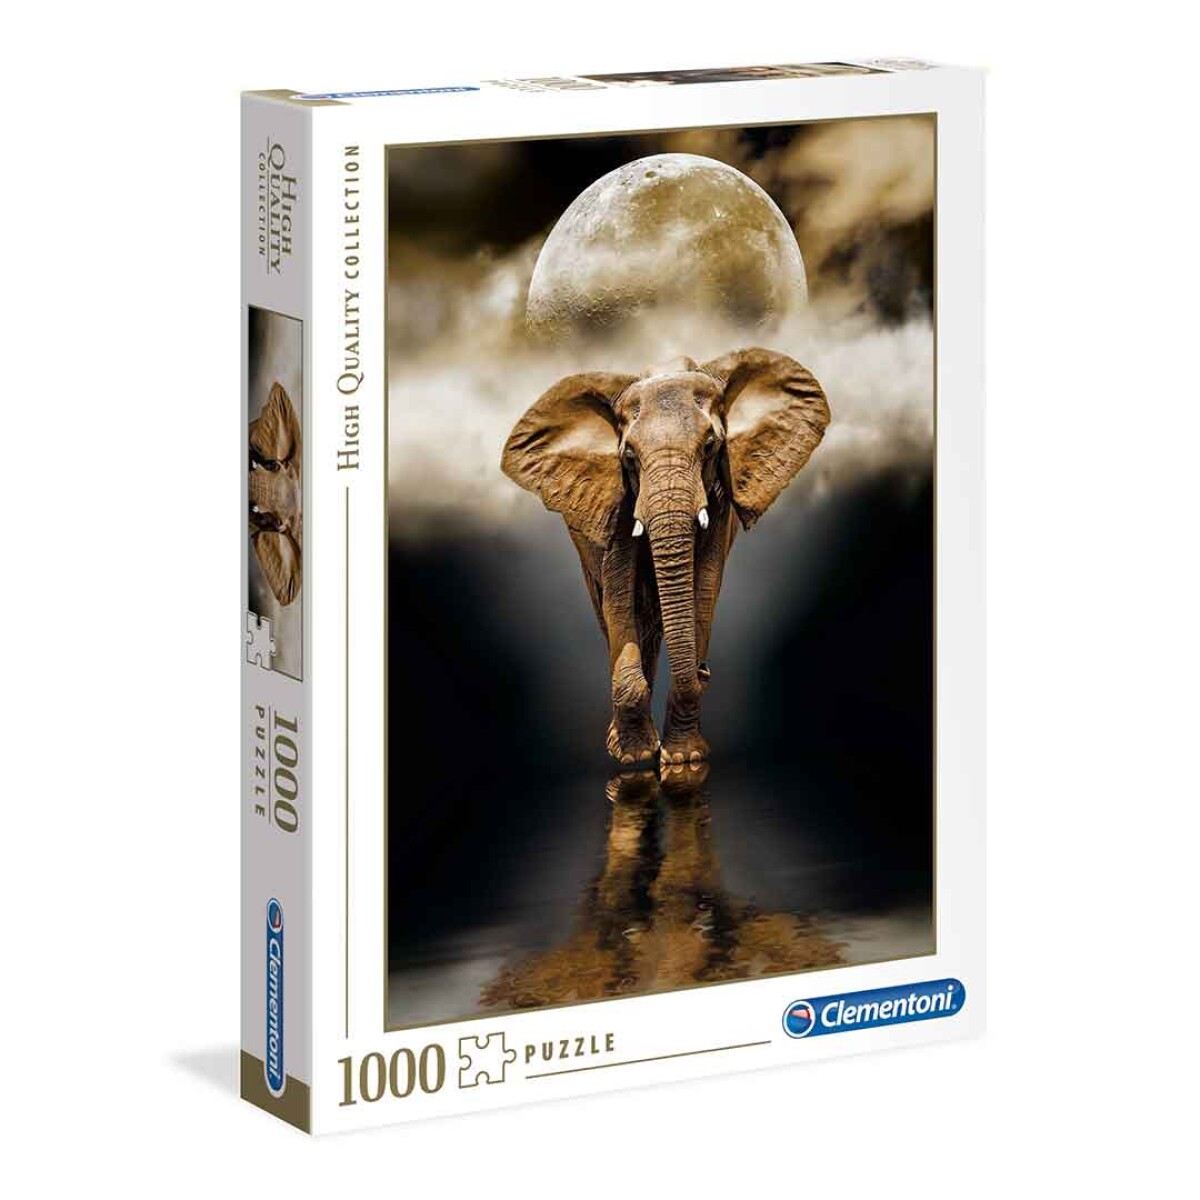 Puzzle Clementoni 1000 piezas Elefante High Quality - 001 